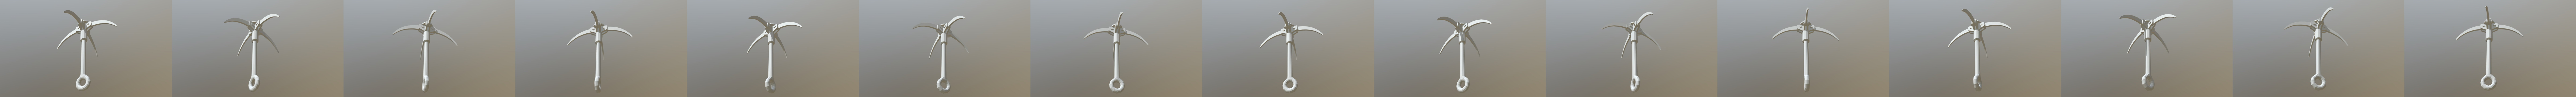 Grappling Hook - 3D Model by firdz3d